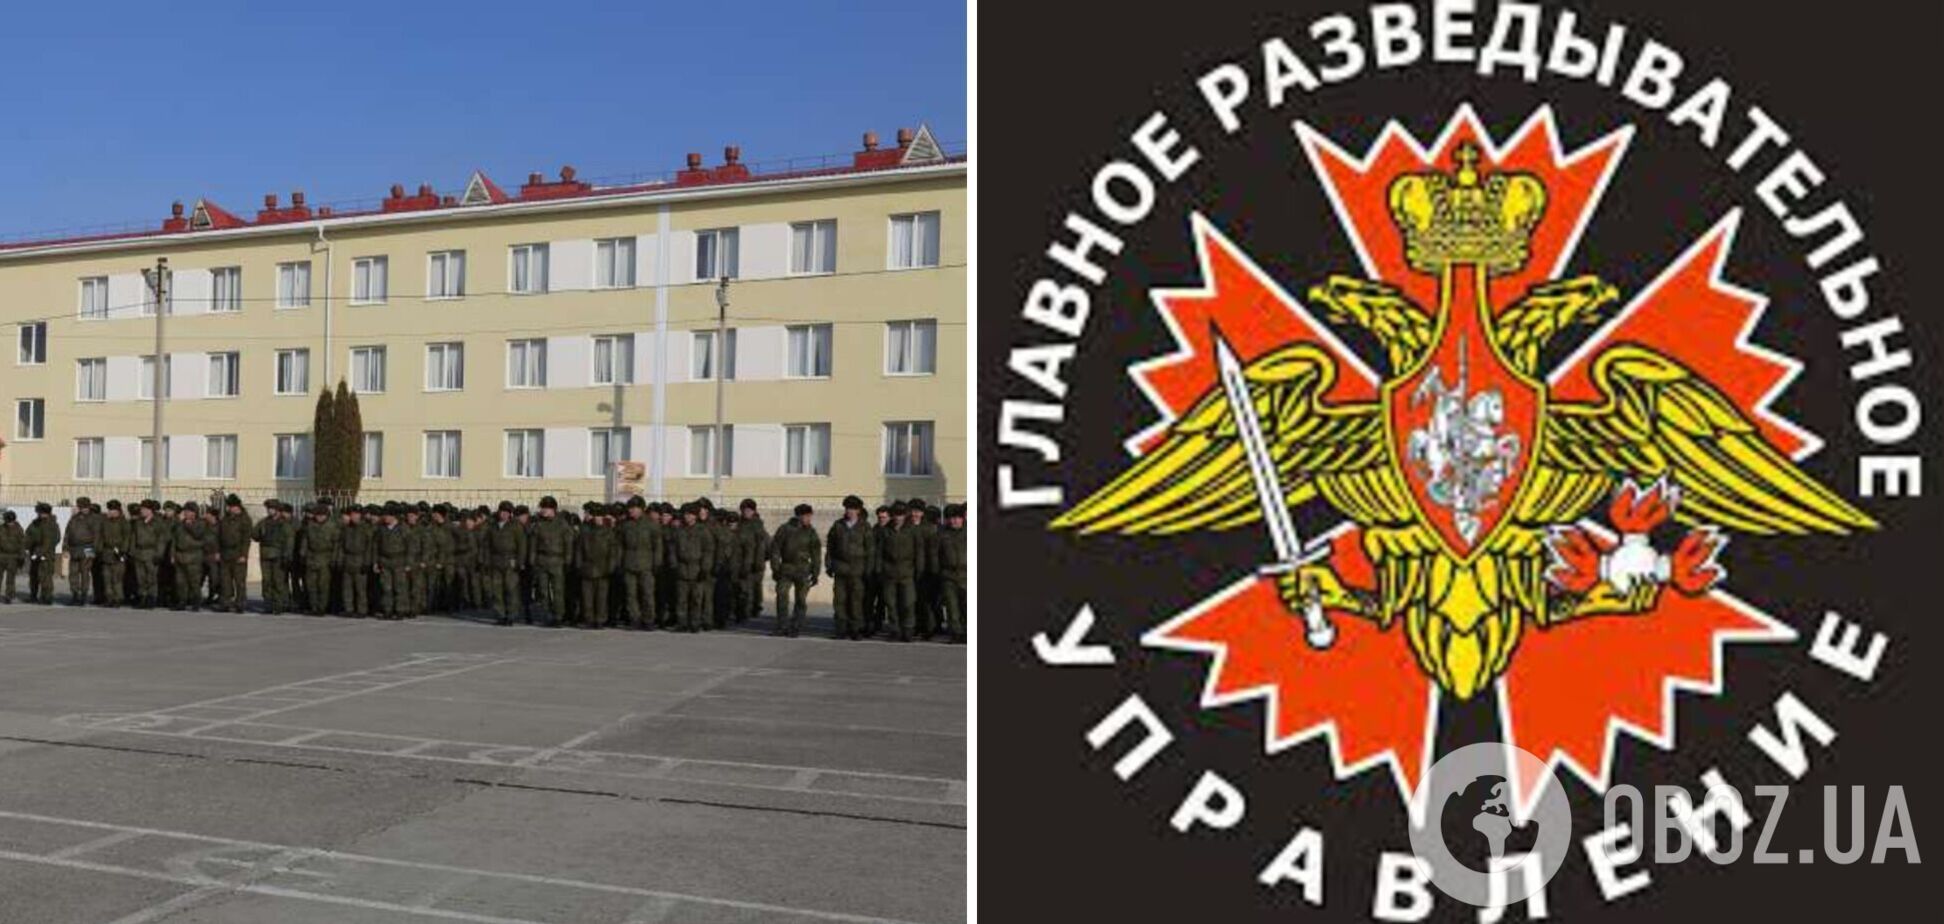 Разведчики опубликовали имена сотрудников ГРУ, совершающих военные преступления против украинцев